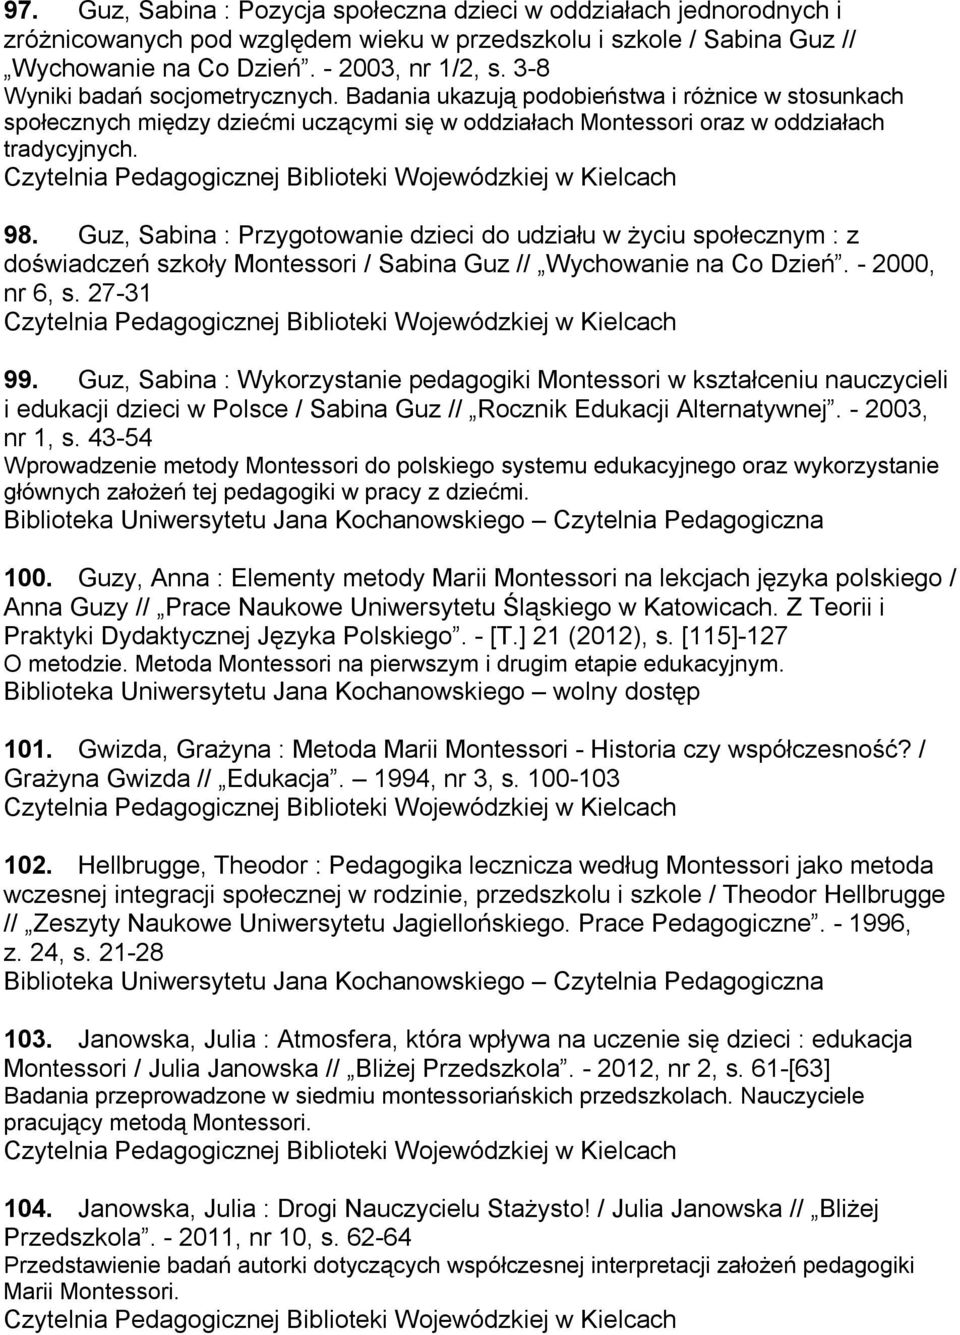 Guz, Sabina : Przygotowanie dzieci do udziału w życiu społecznym : z doświadczeń szkoły Montessori / Sabina Guz // Wychowanie na Co Dzień. - 2000, nr 6, s. 27-31 99.